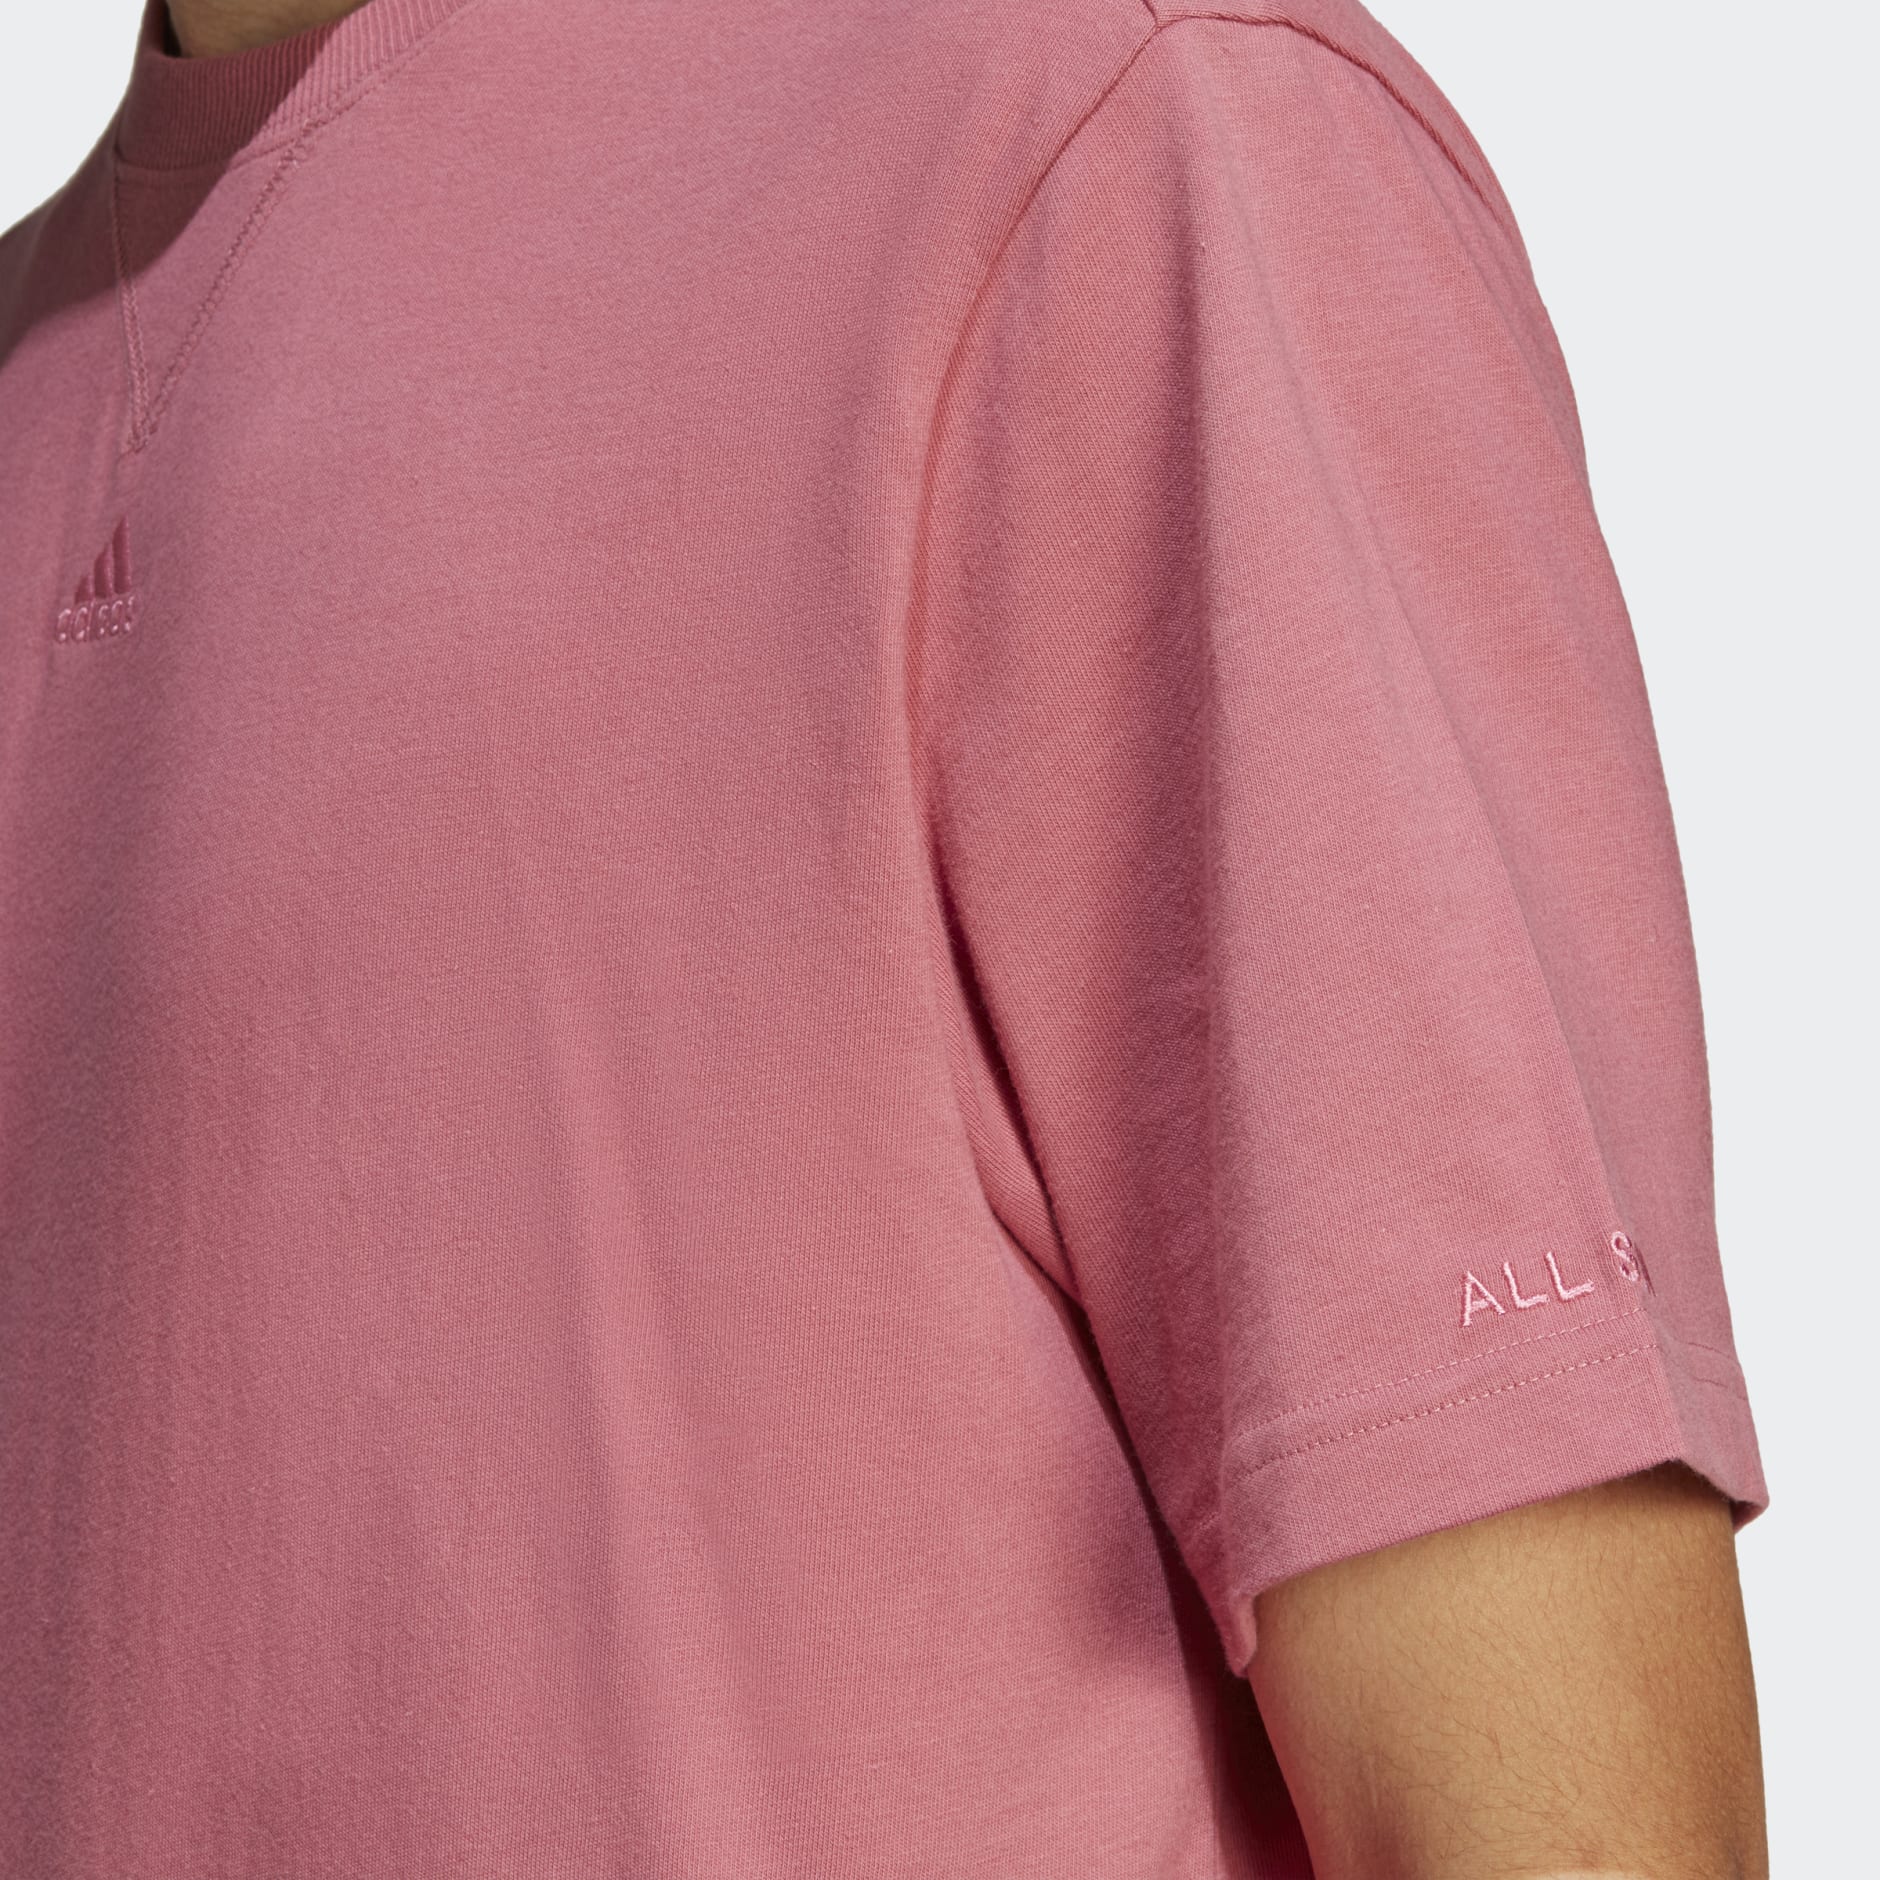 Tee - Israel Clothing Pink SZN | adidas - ALL